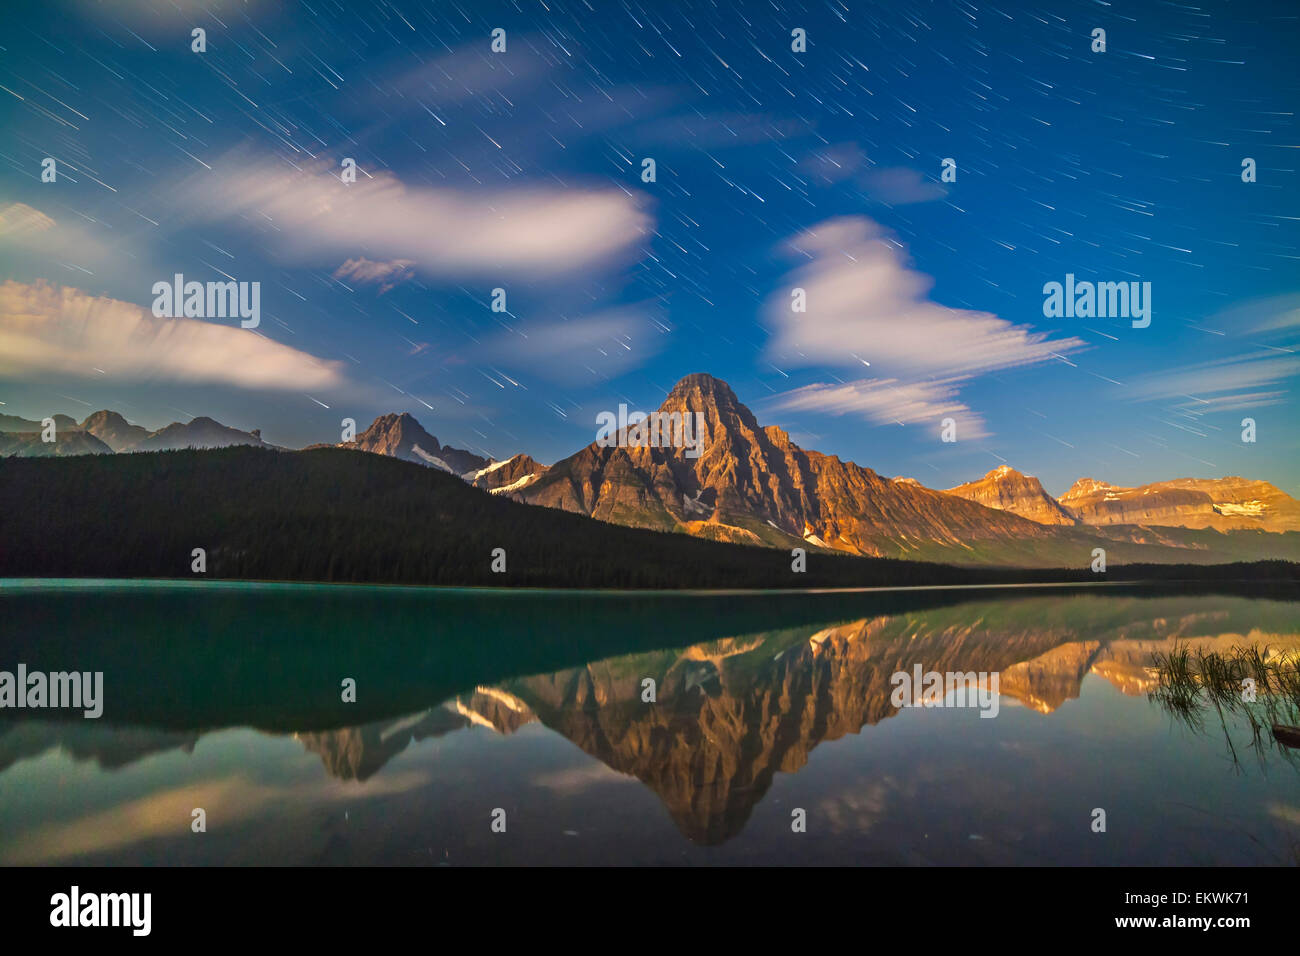 11 août 2014 - des étoiles dans le ciel du nord-ouest comme ils l'arrière situé derrière la montagne de la ligne continentale de partage à Banff, beh Banque D'Images